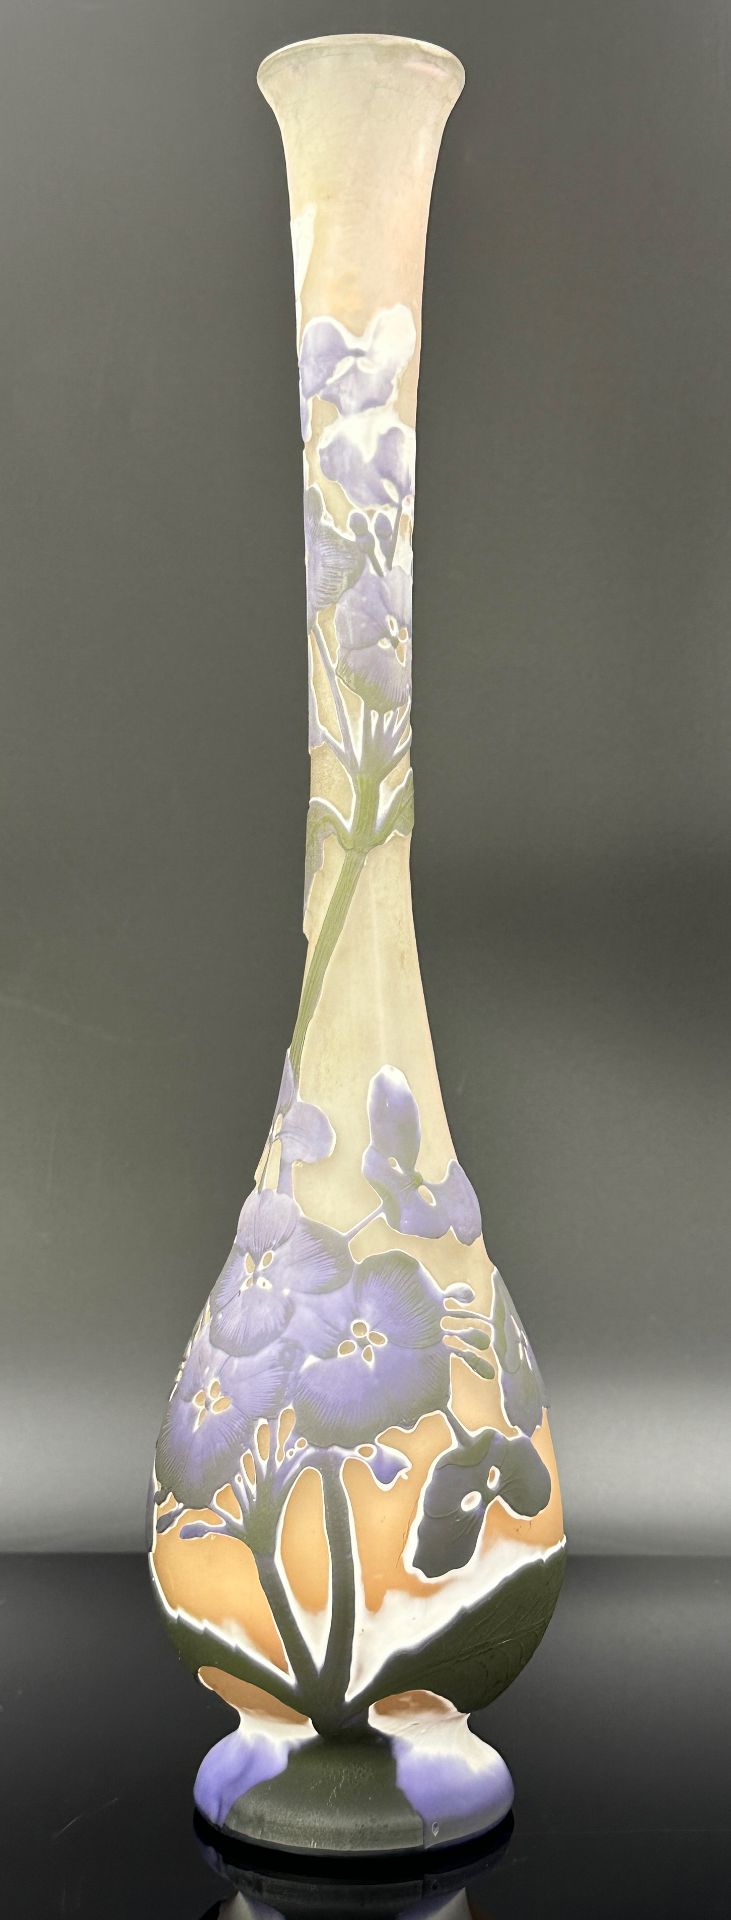 Large long-necked vase. Emile GALLÉ (1846 - 1904). Around 1905.